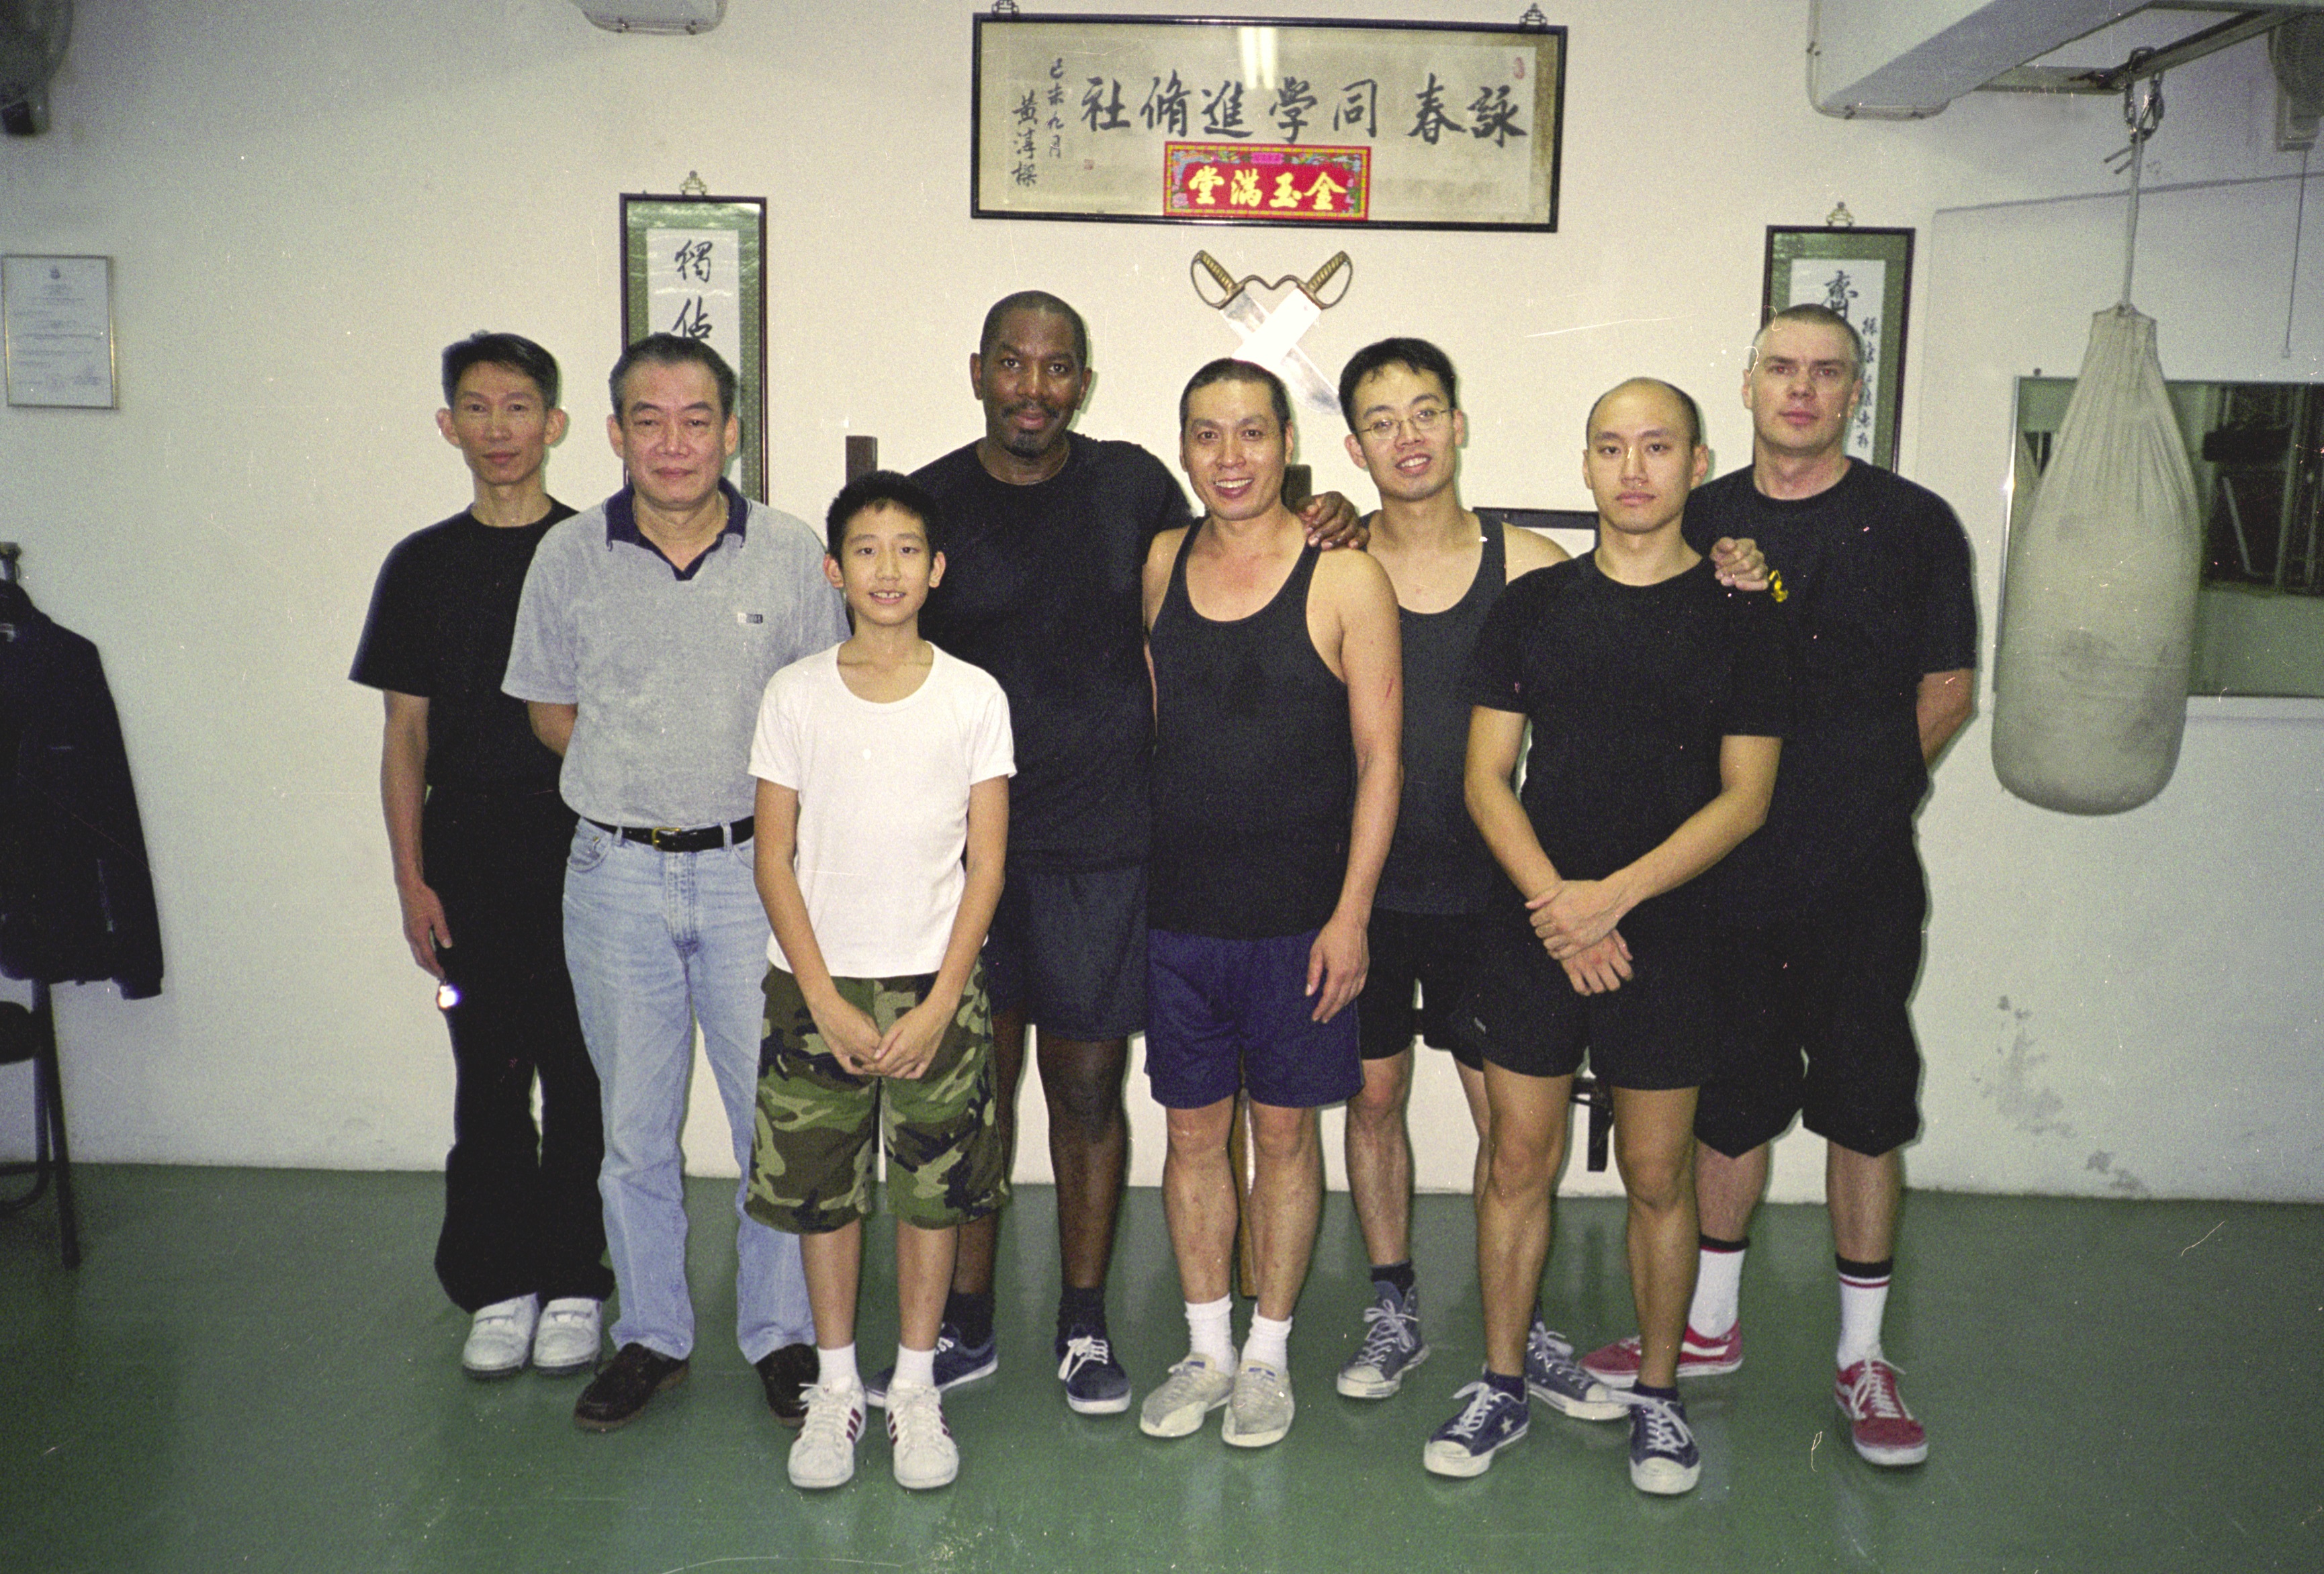 Hong Kong training